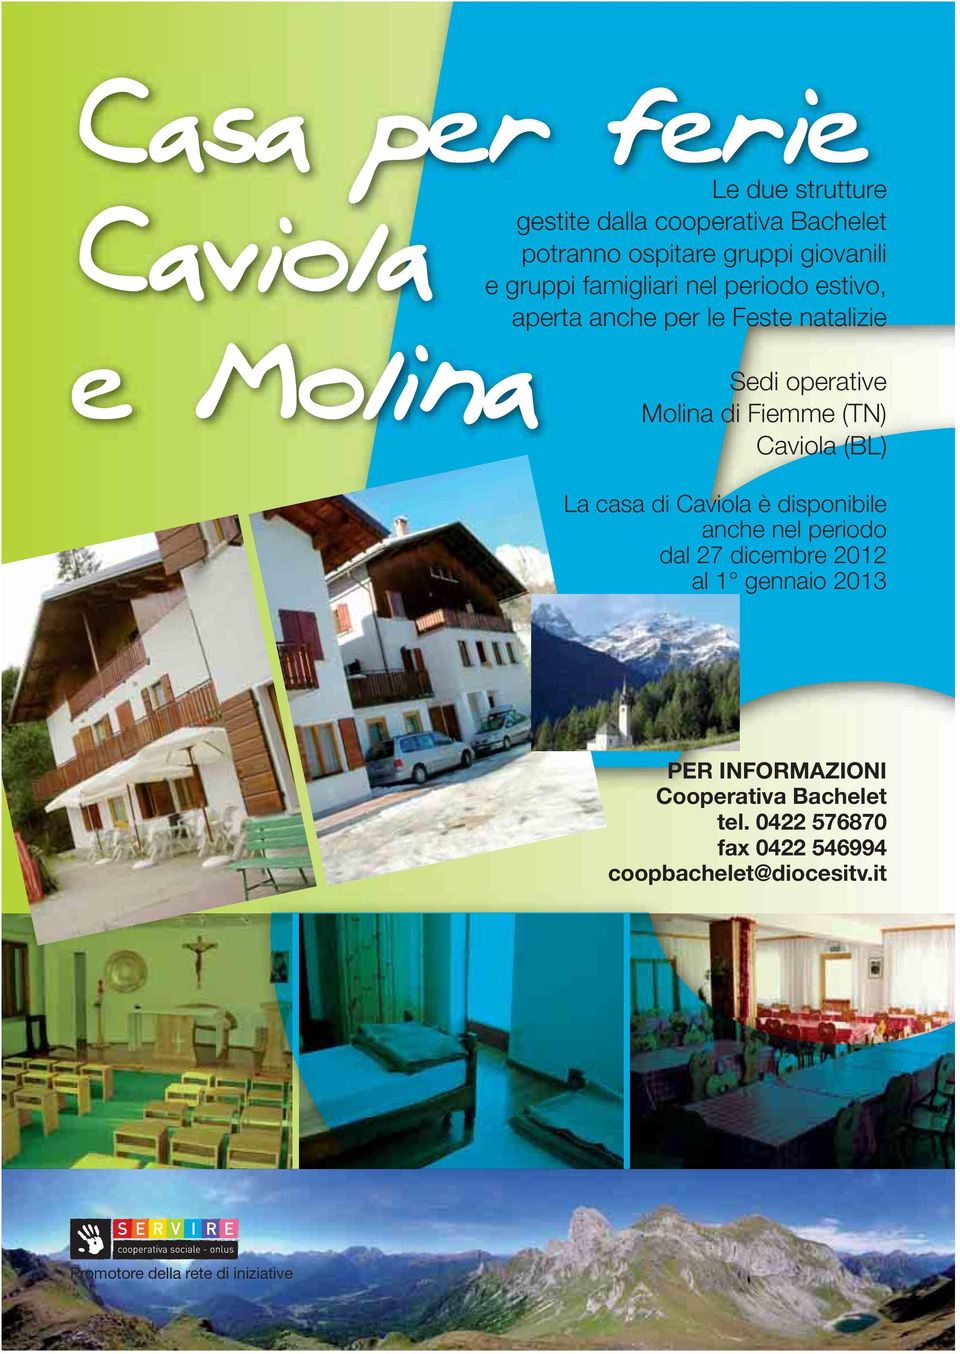 Fiemme (TN) Caviola (BL) La casa di Caviola è disponibile anche nel periodo dal 27 dicembre 2012 al 1 gennaio 2013